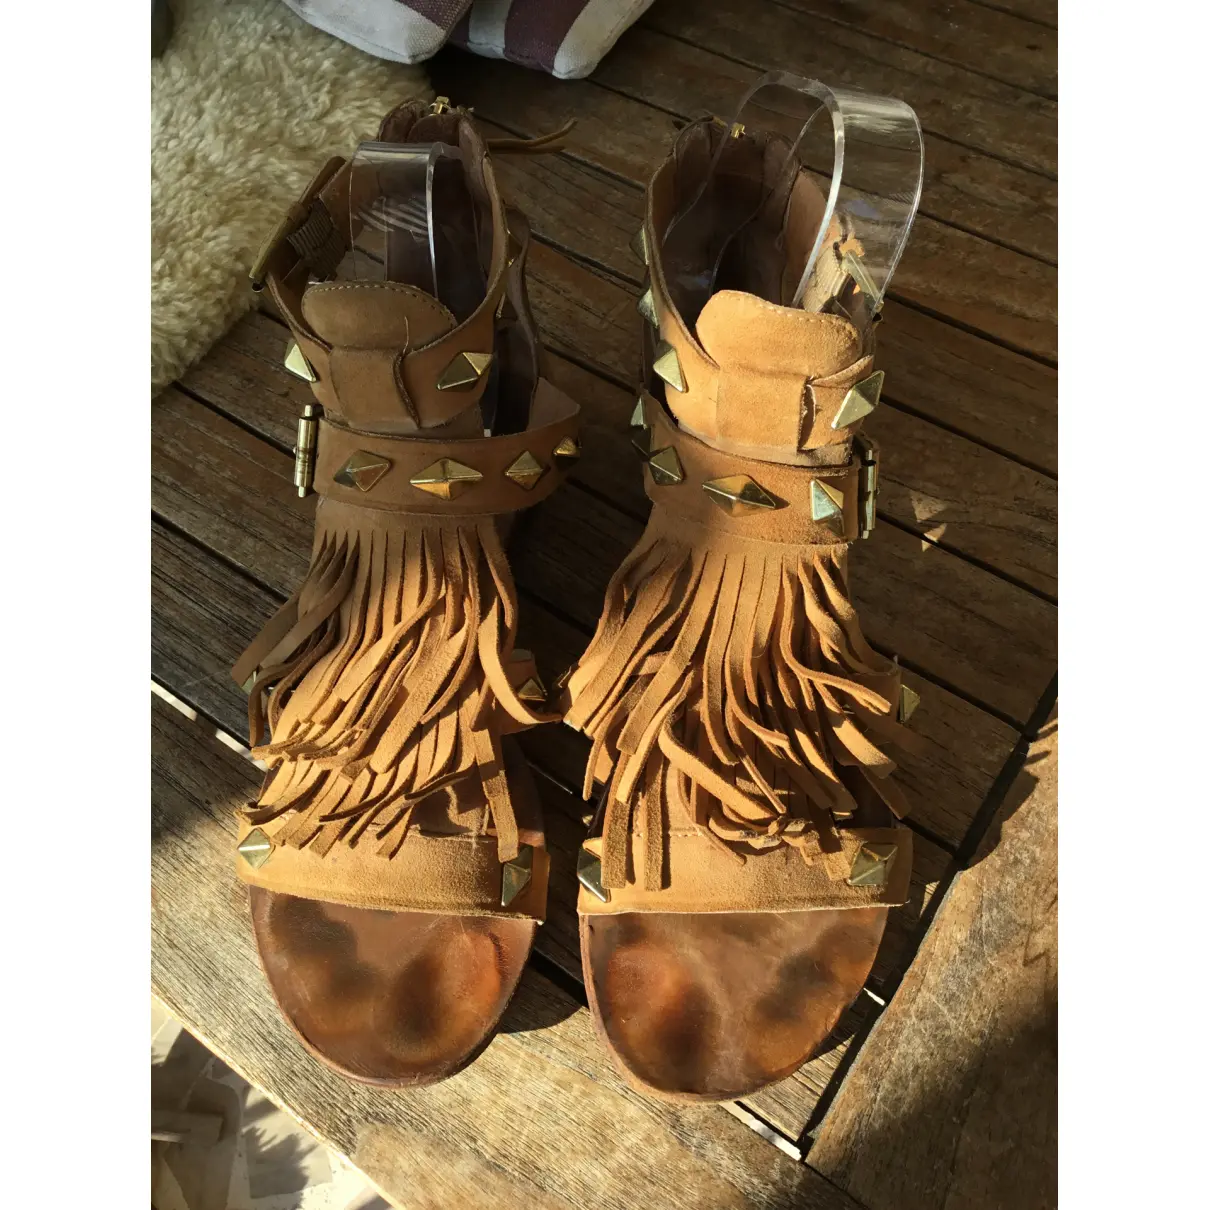 Buy Ash Leather sandal online